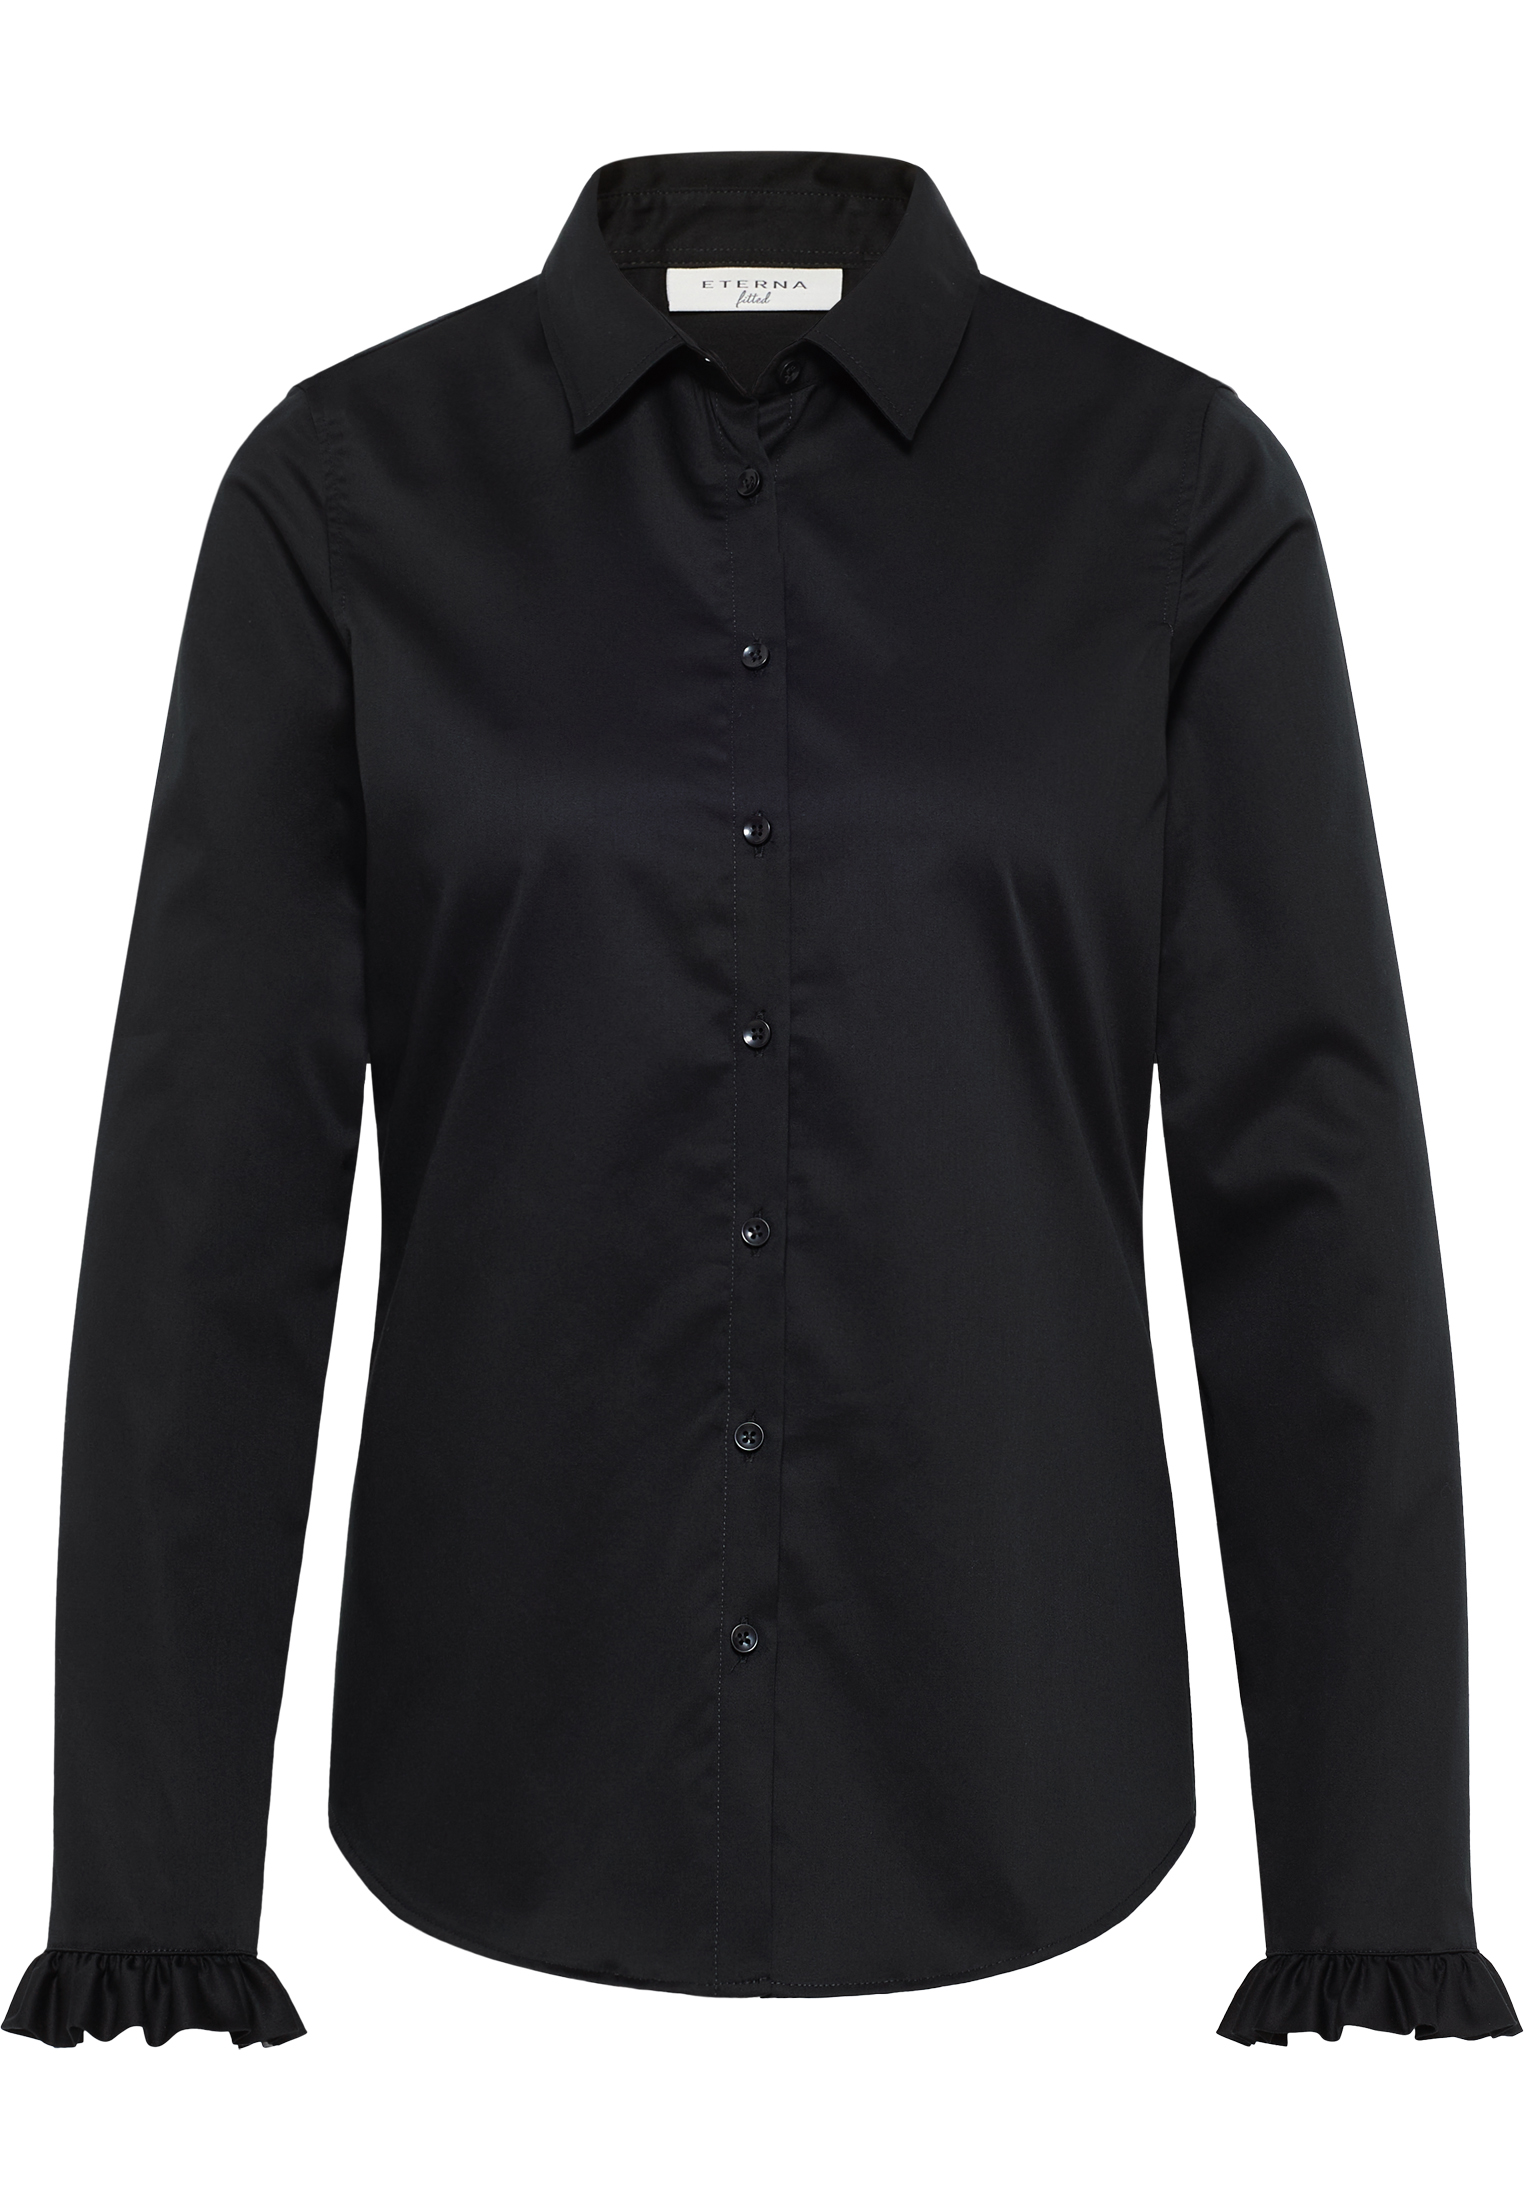 Satin Shirt Bluse schwarz | in 2BL04181-03-91-40-1/1 Langarm 40 schwarz | unifarben | 